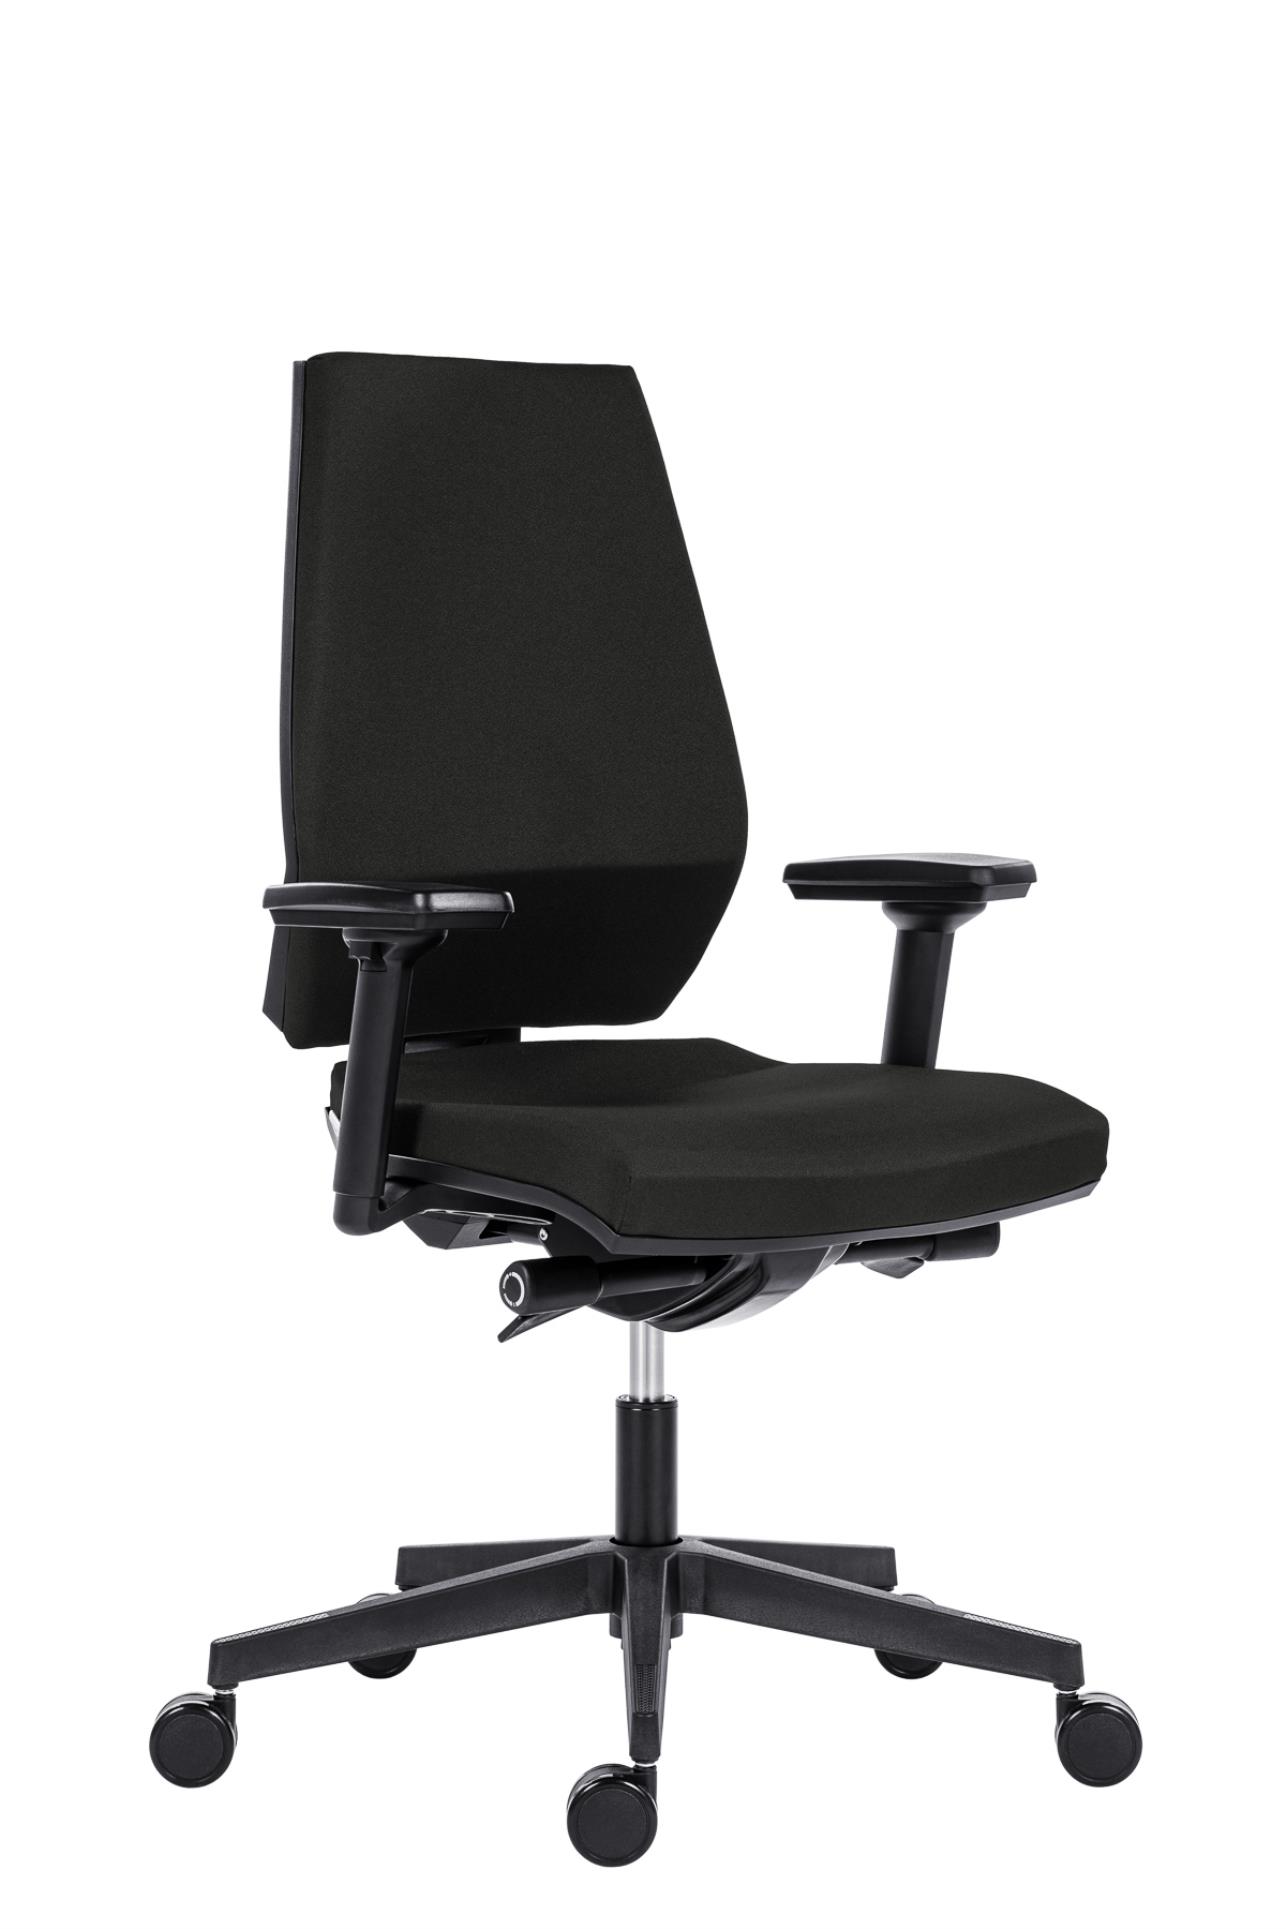 Antares Kancelářská židle Motion - synchro, černá